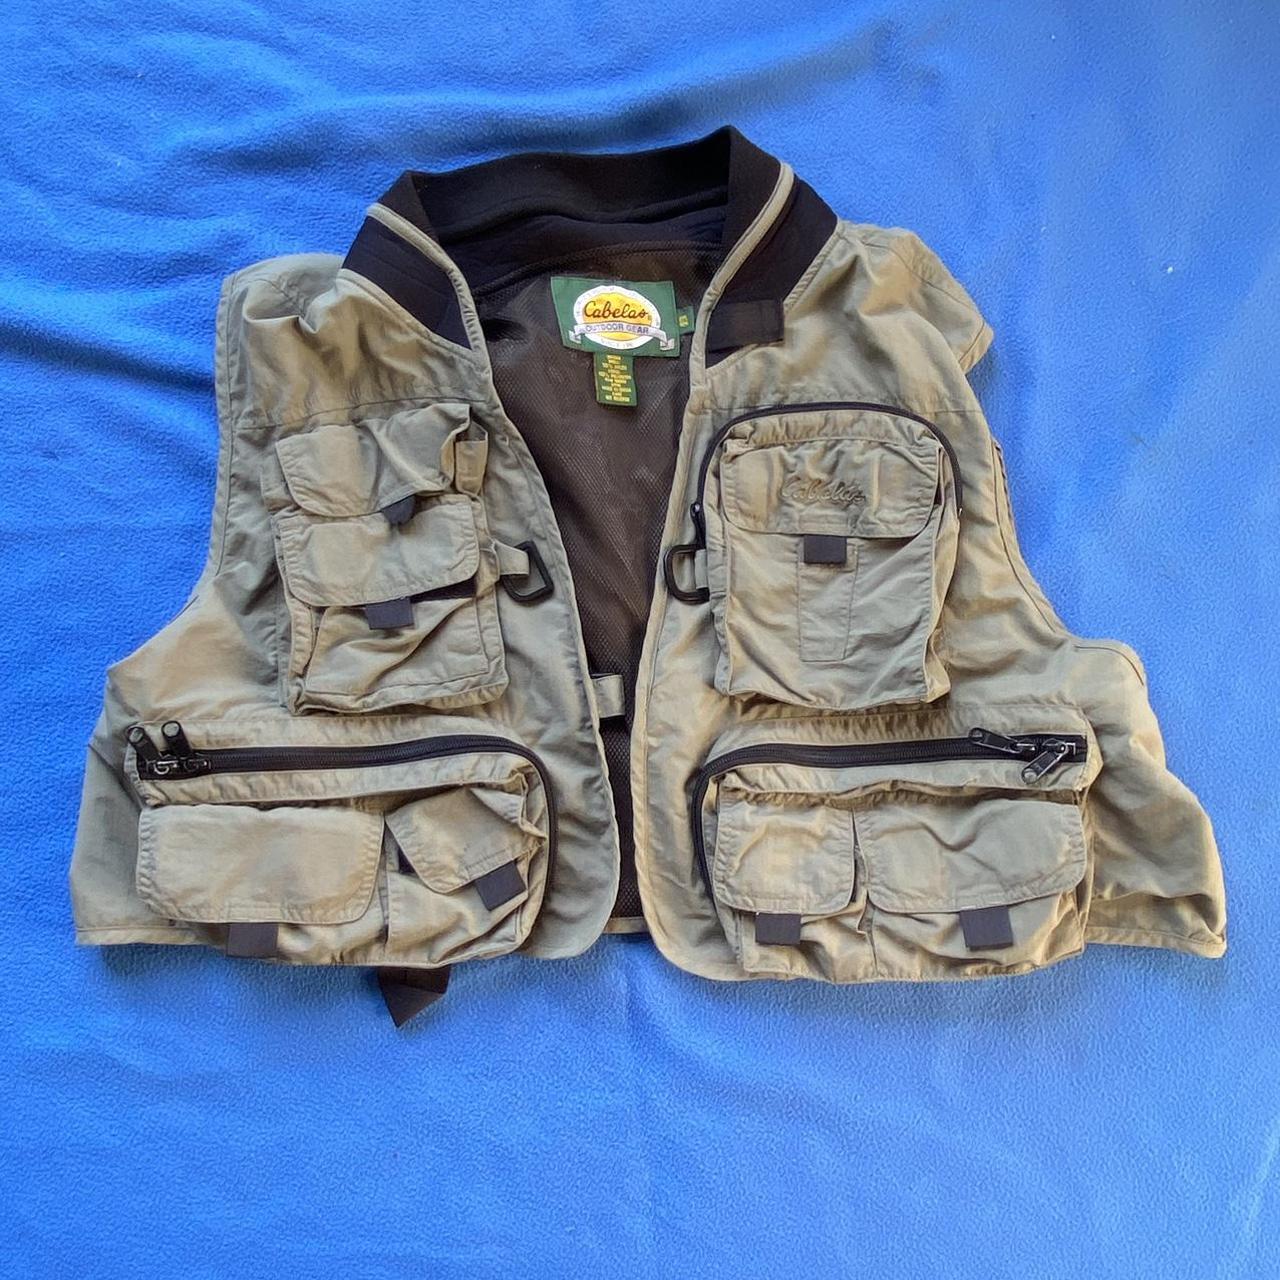 Vintage Cabelas fishing vest. So many dope pockets - Depop